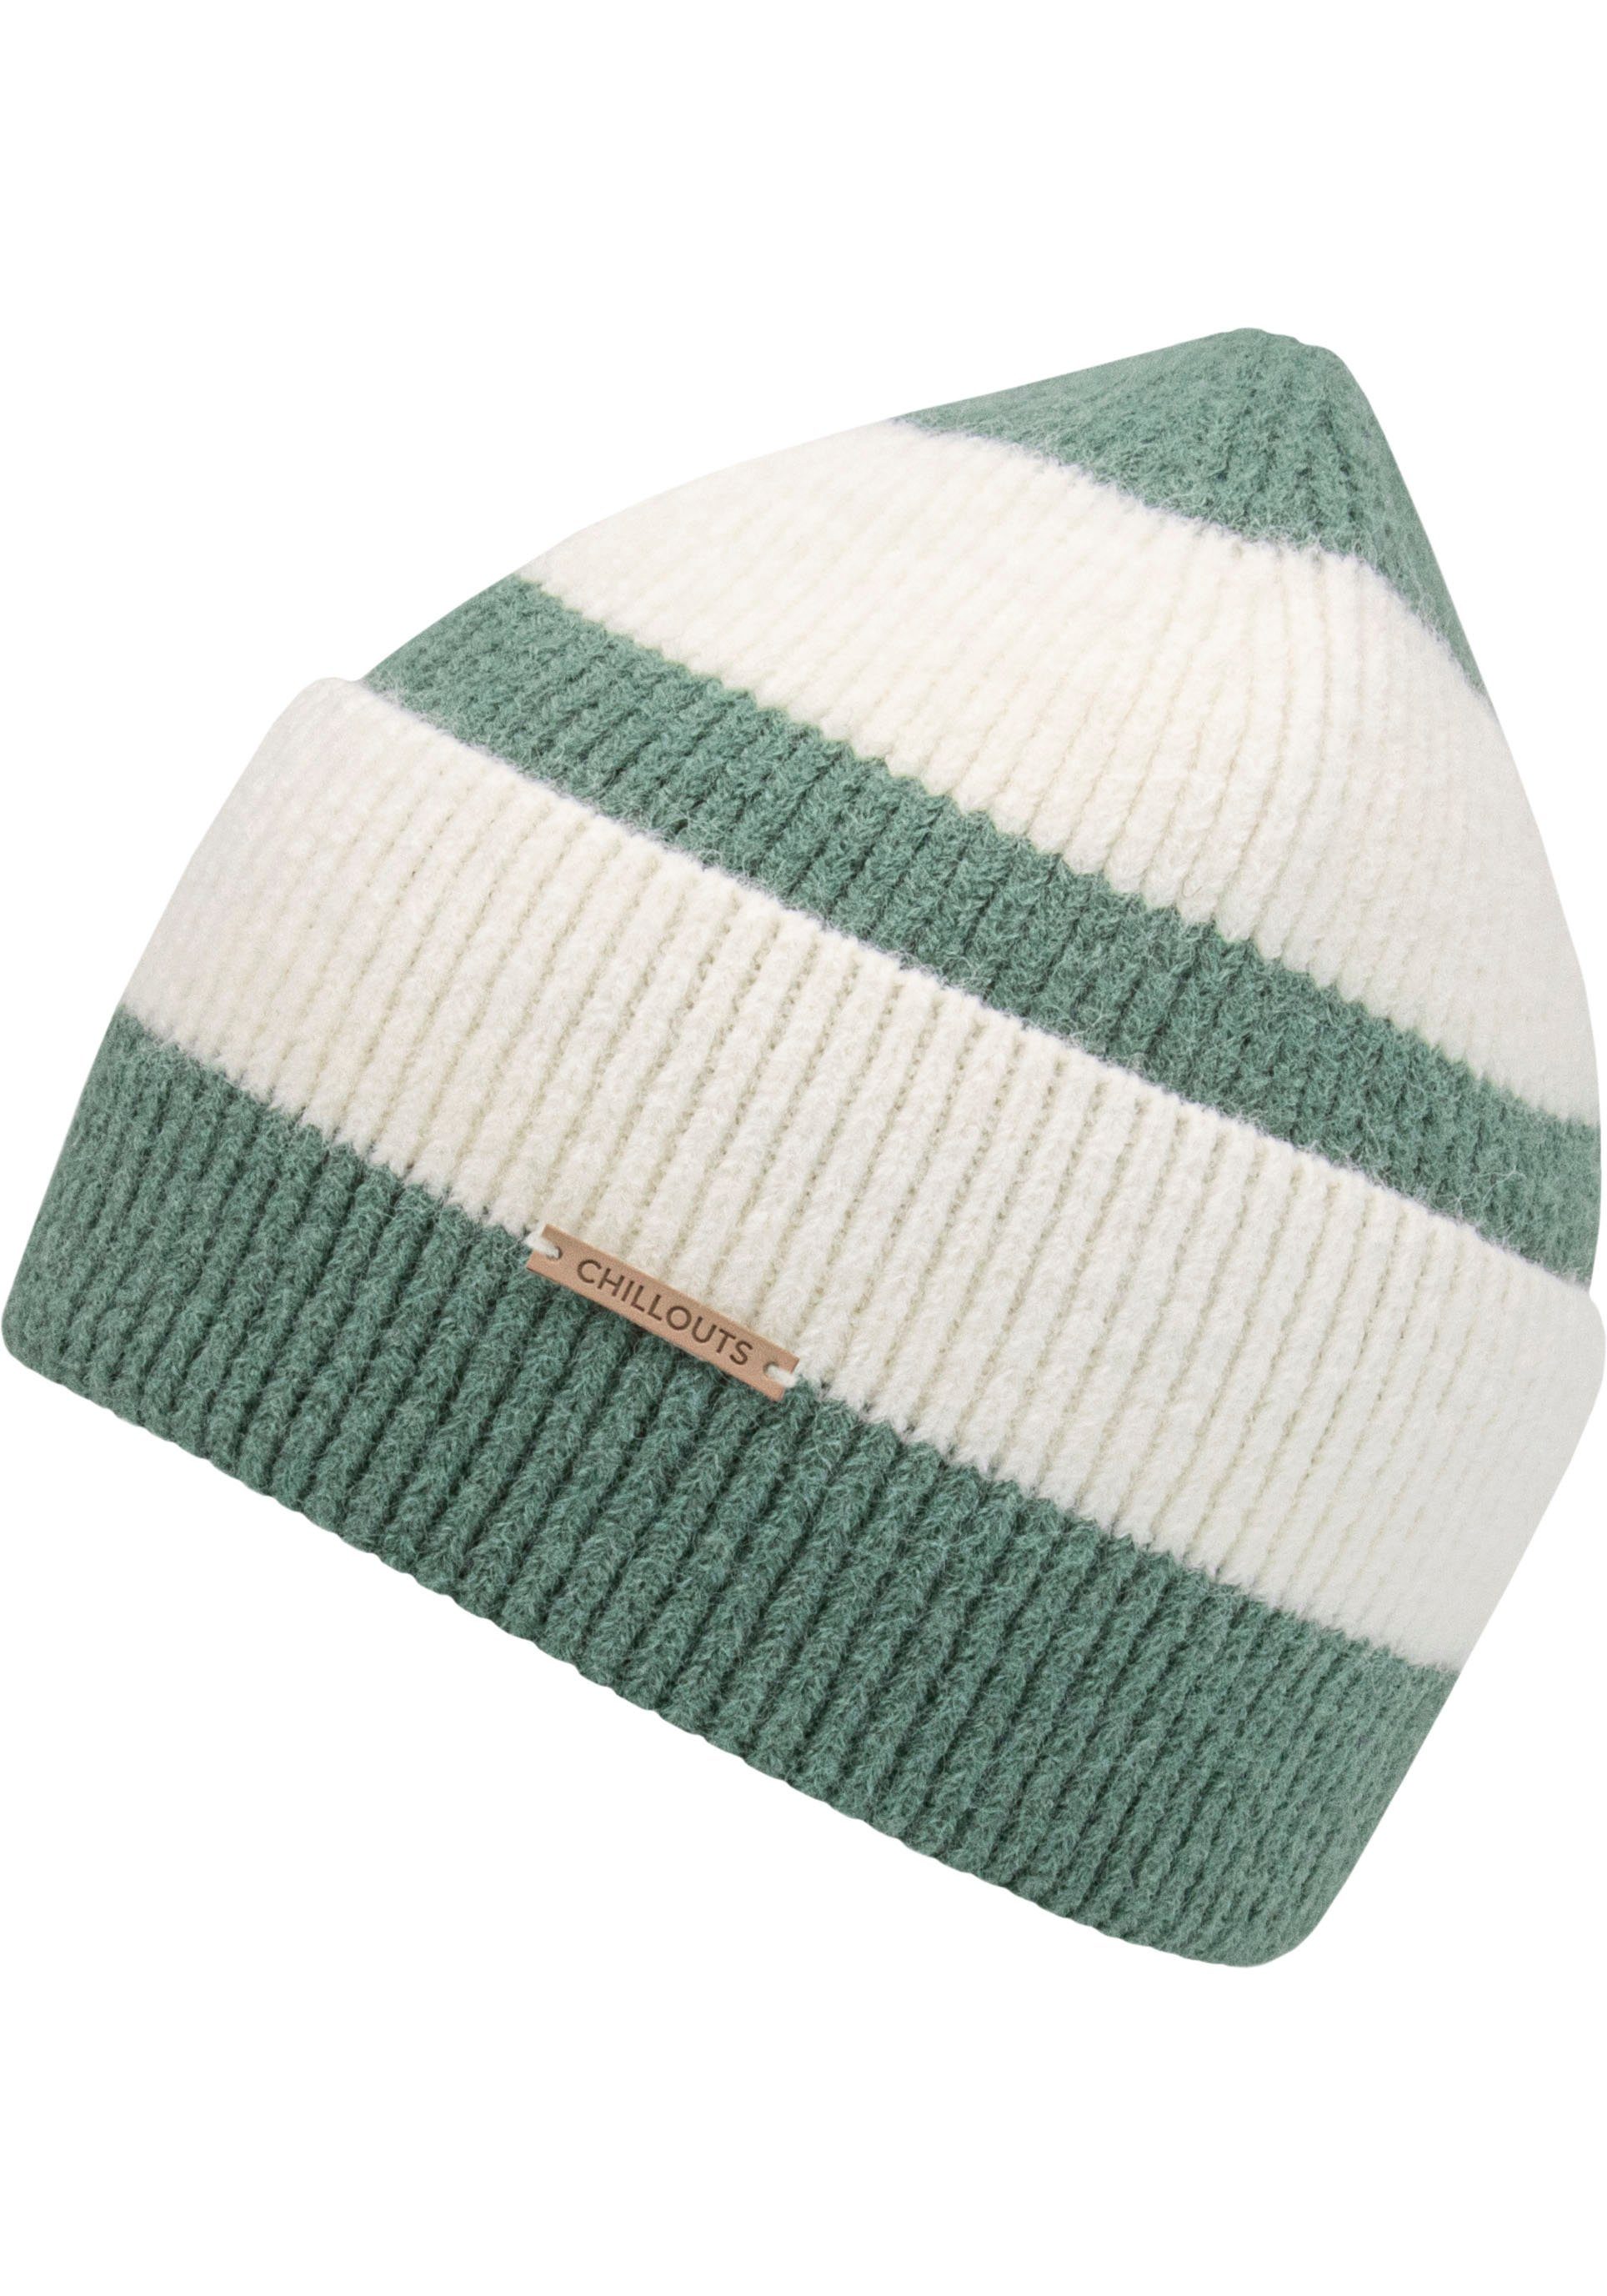 chillouts Strickmütze Im Hat Blockstreifen-Look ash green Susi stripes